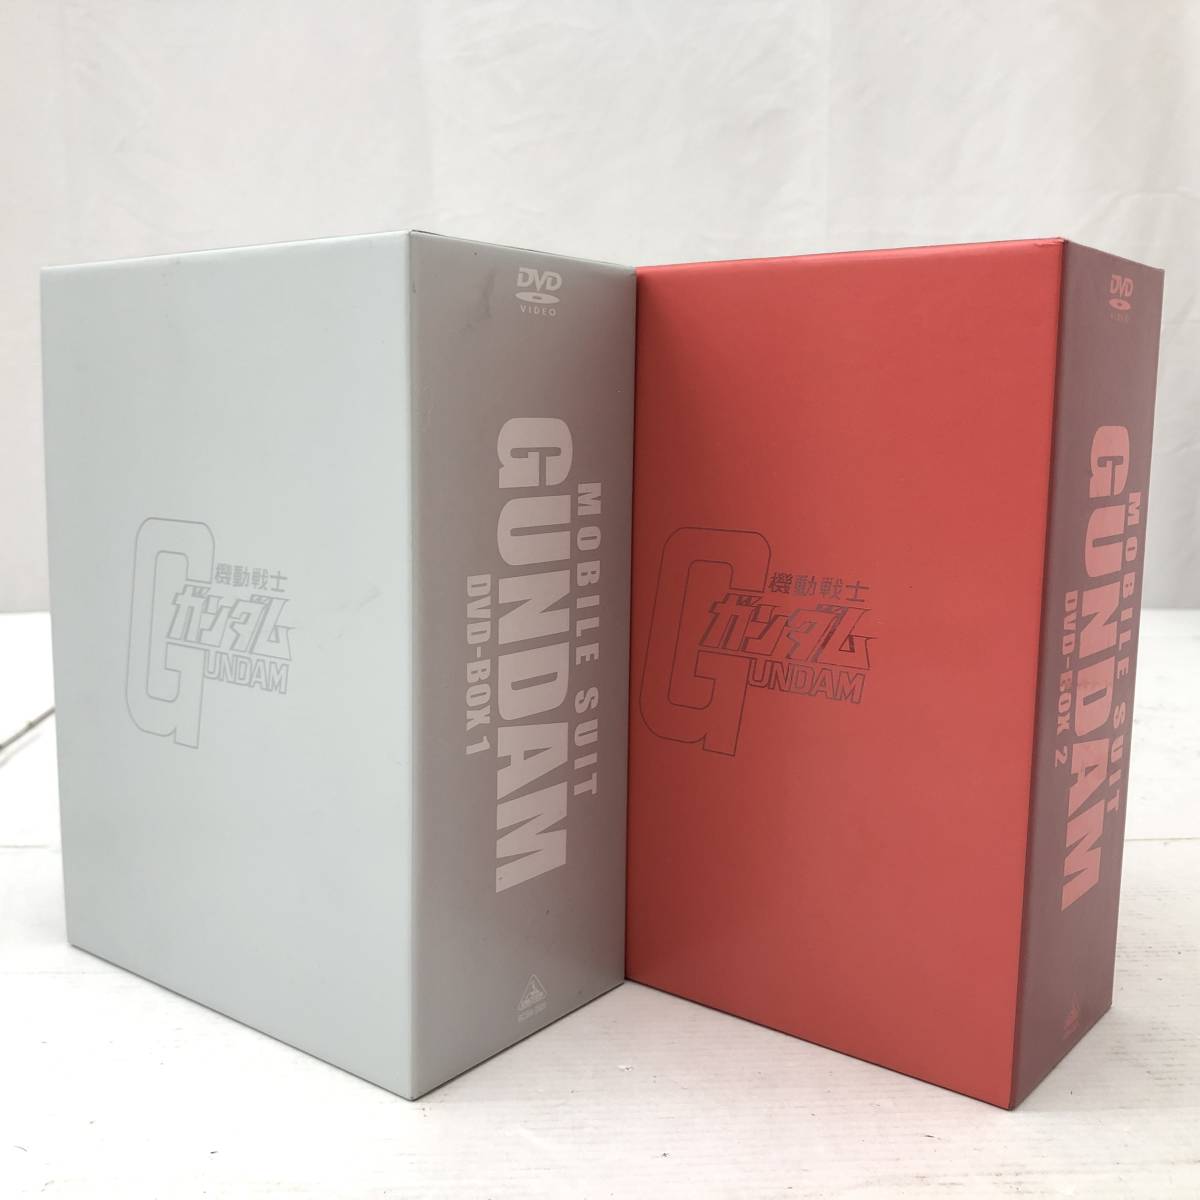 無料発送 機動戦士ガンダム DVD BOX 2箱セット アニメ - safetynettracking.com